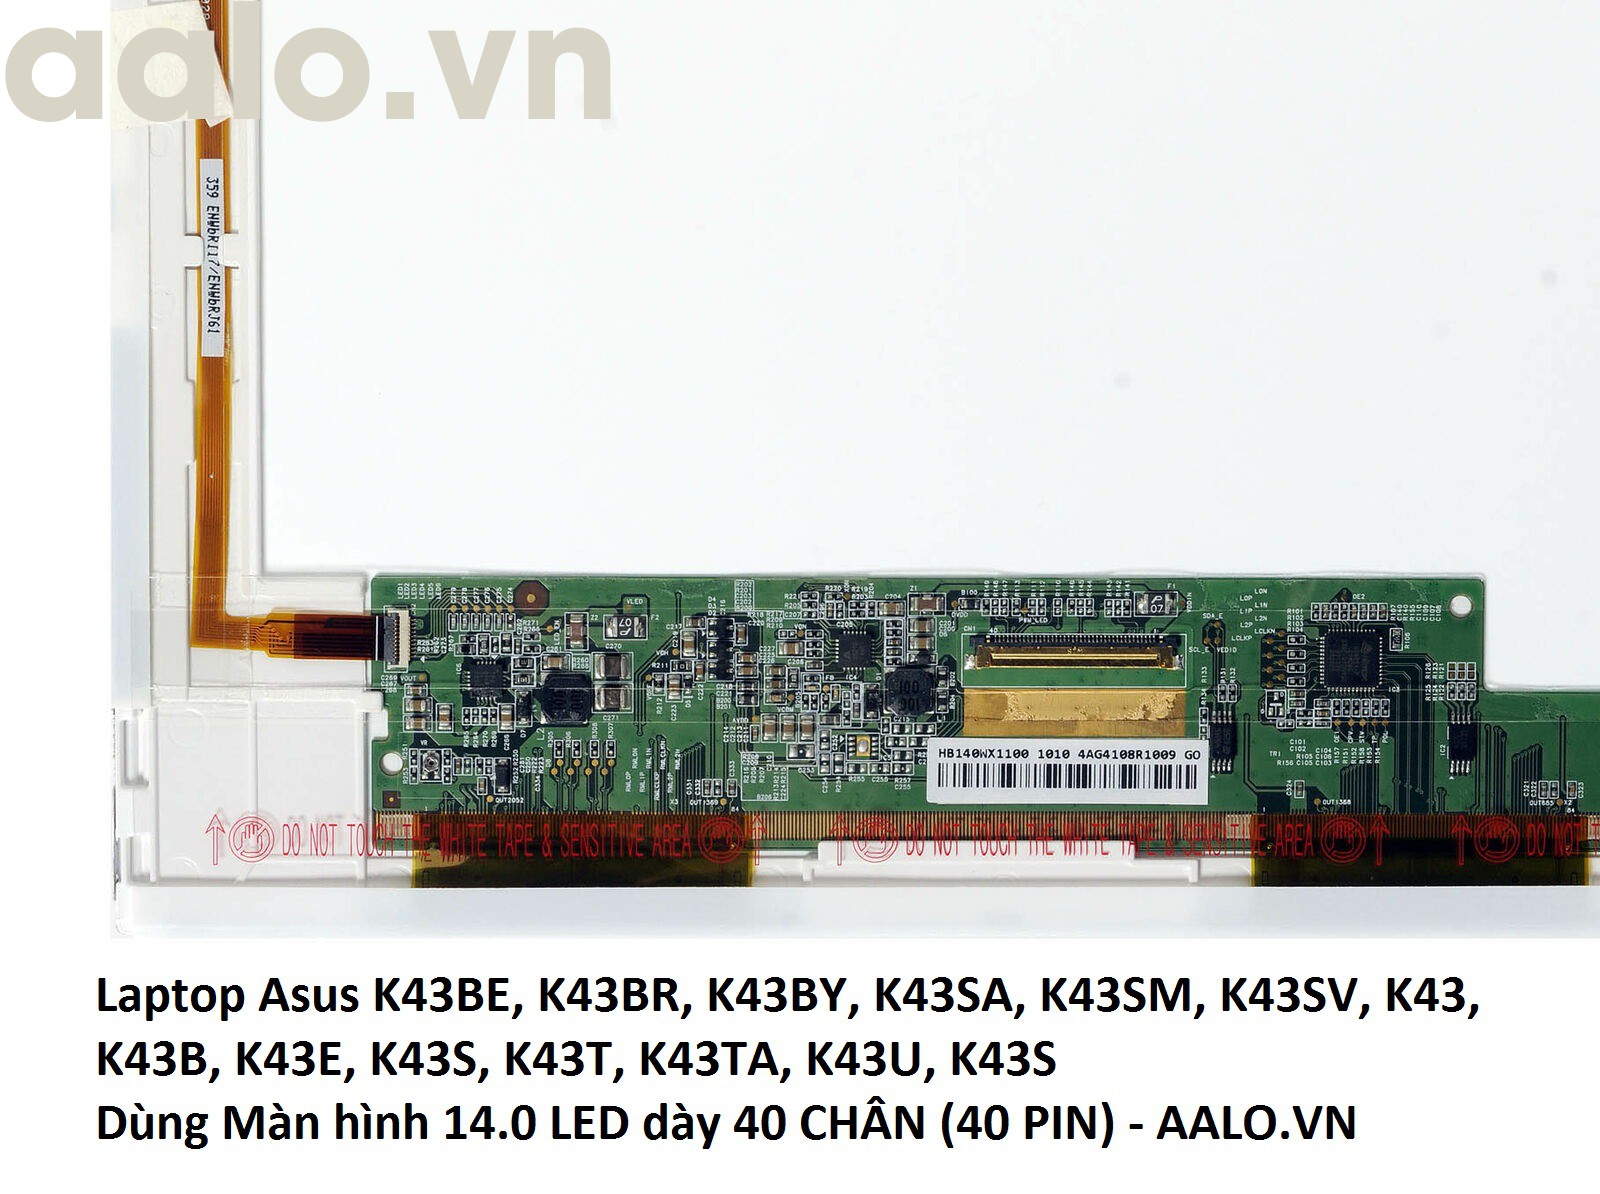 Màn hình laptop Asus K43BE, K43BR, K43BY, K43SA, K43SM, K43SV, K43, K43B, K43E, K43S, K43T, K43TA, K43U, K43S